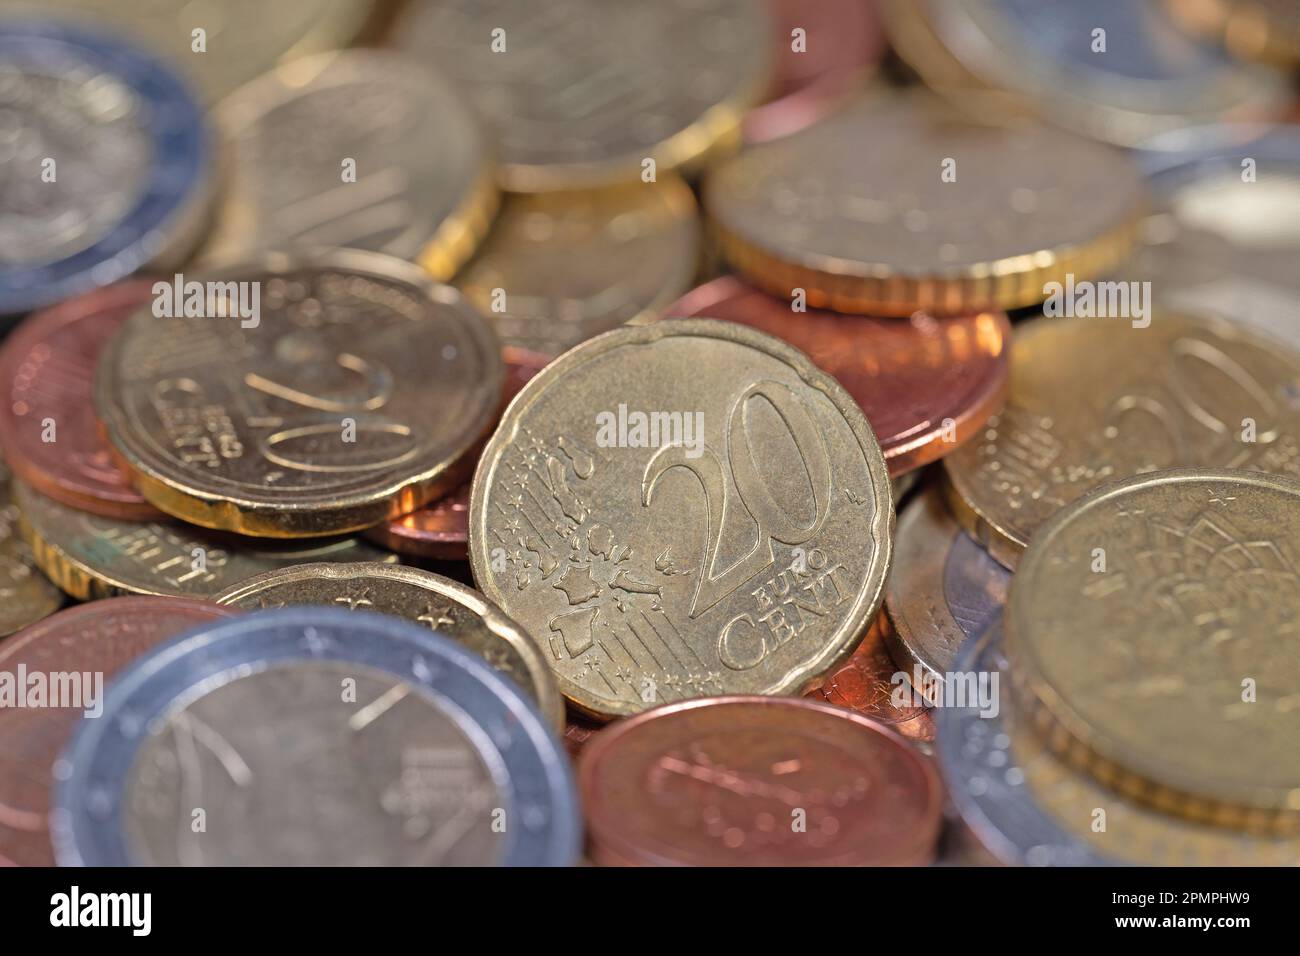 Euro coins in a closeup Stock Photo